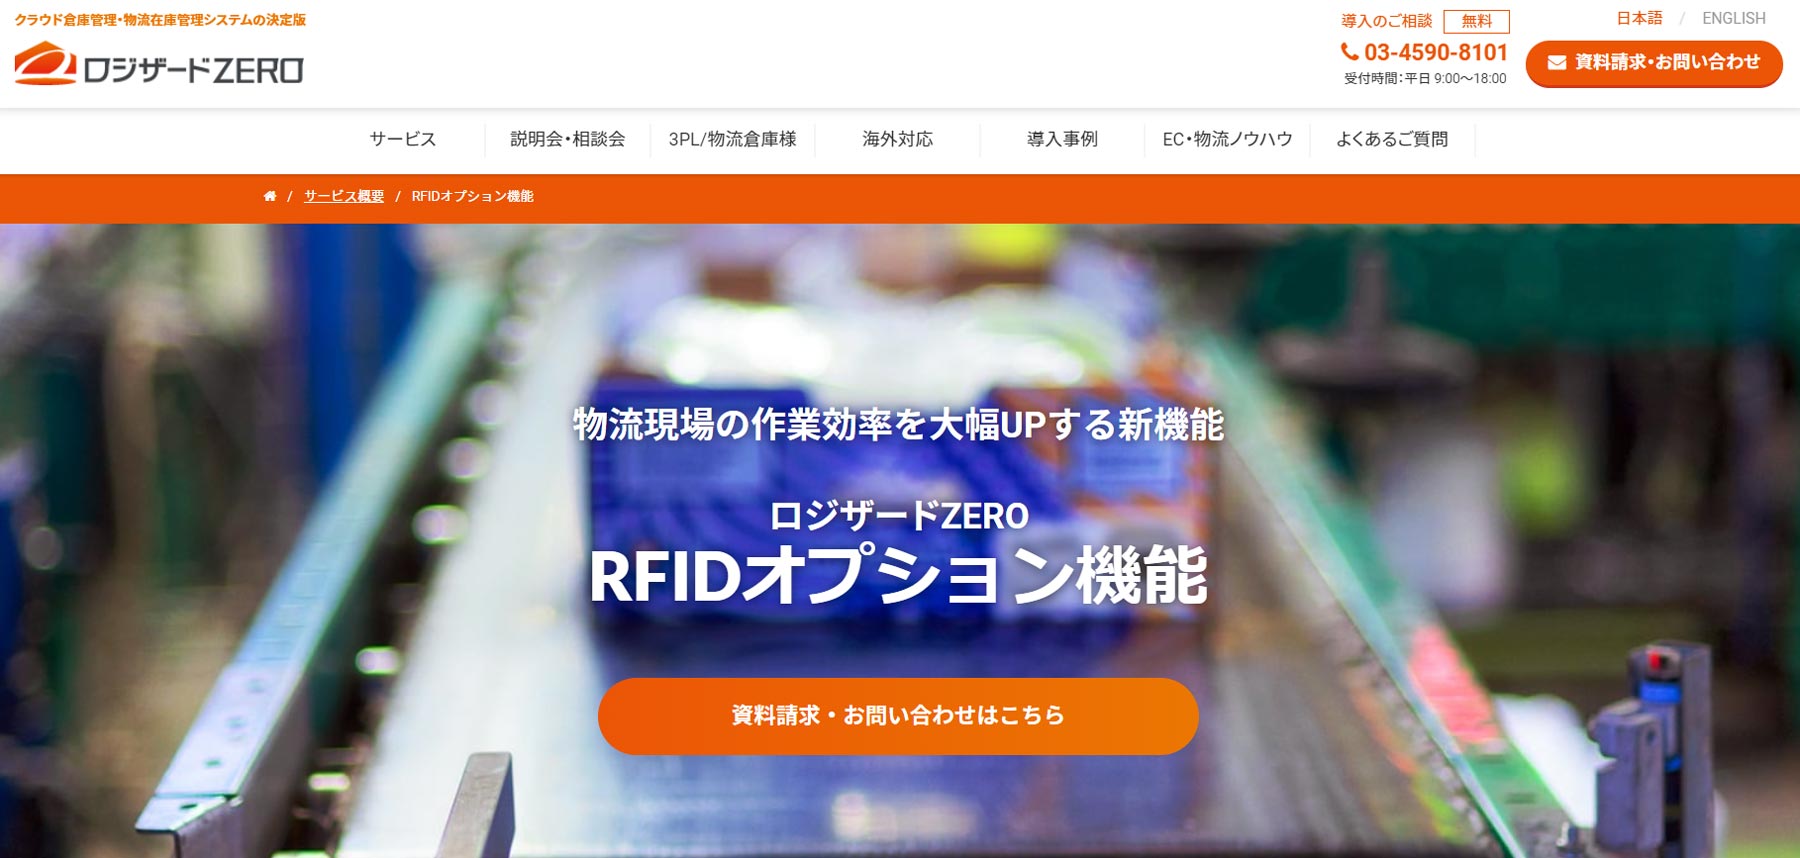 ロジザードZERO RFIDオプション機能公式Webサイト